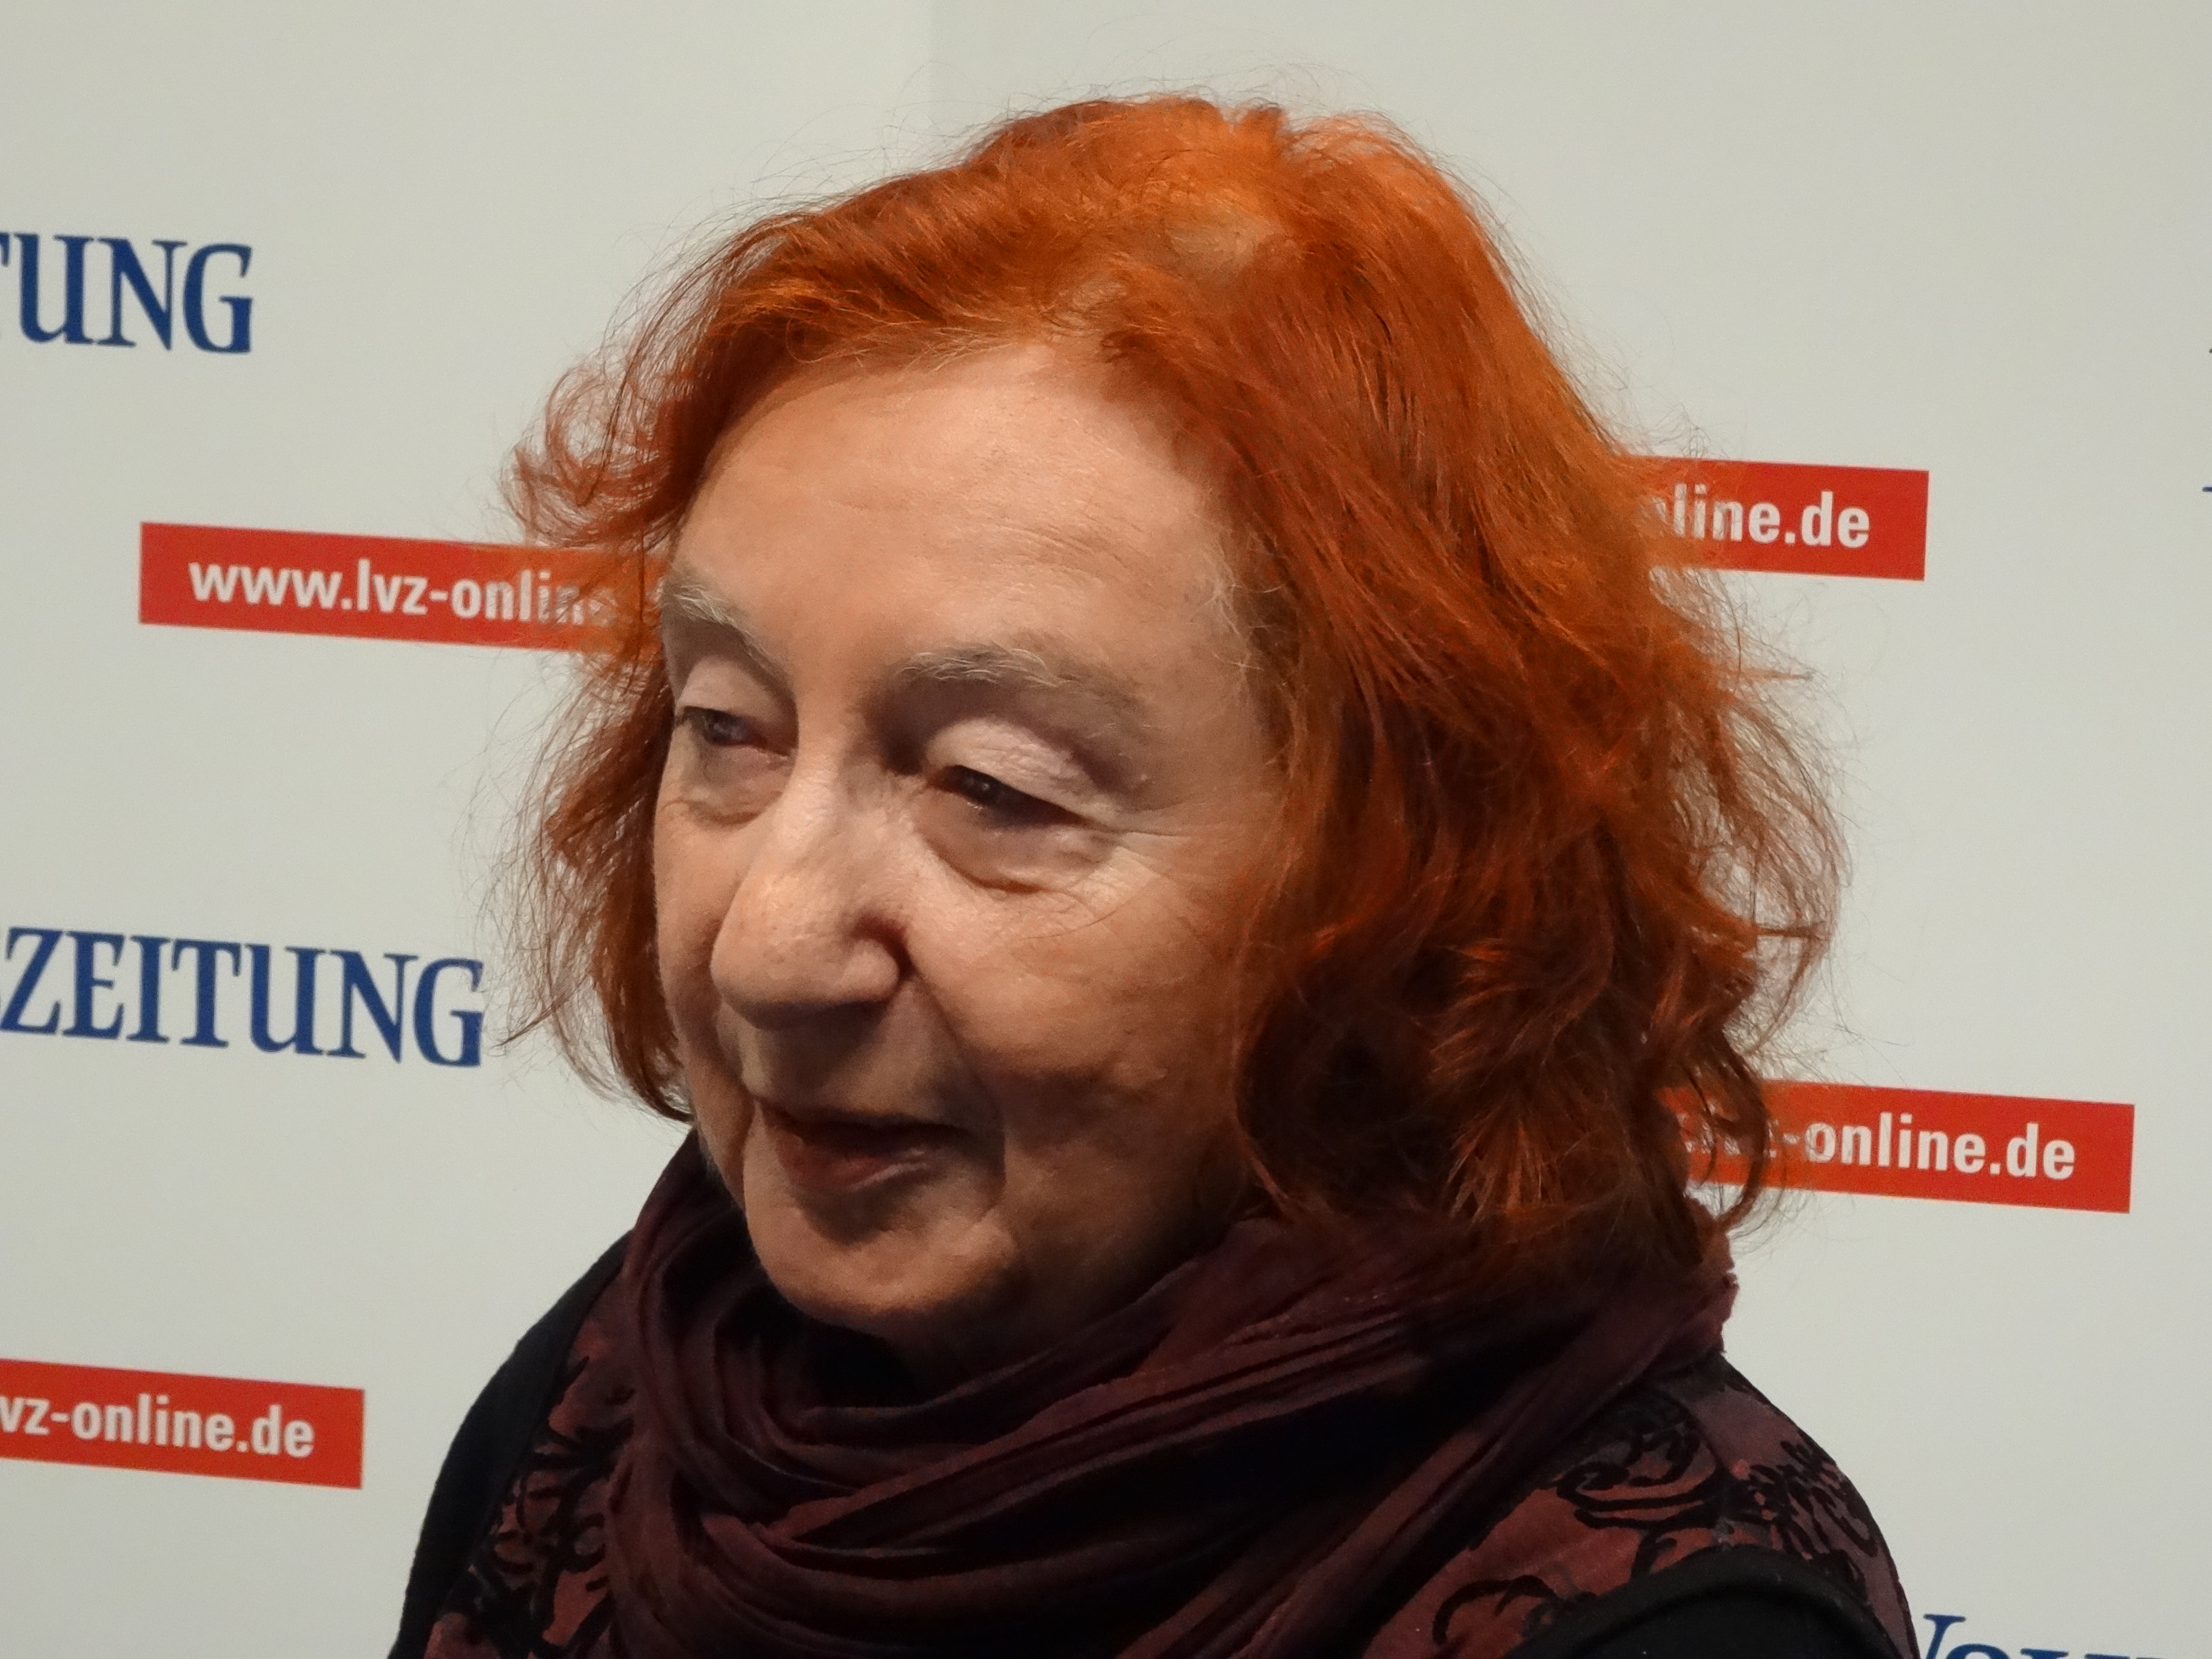 Leipziger Buchmesse 13. März 2015. Foto Detlef M. Plaisier (9)